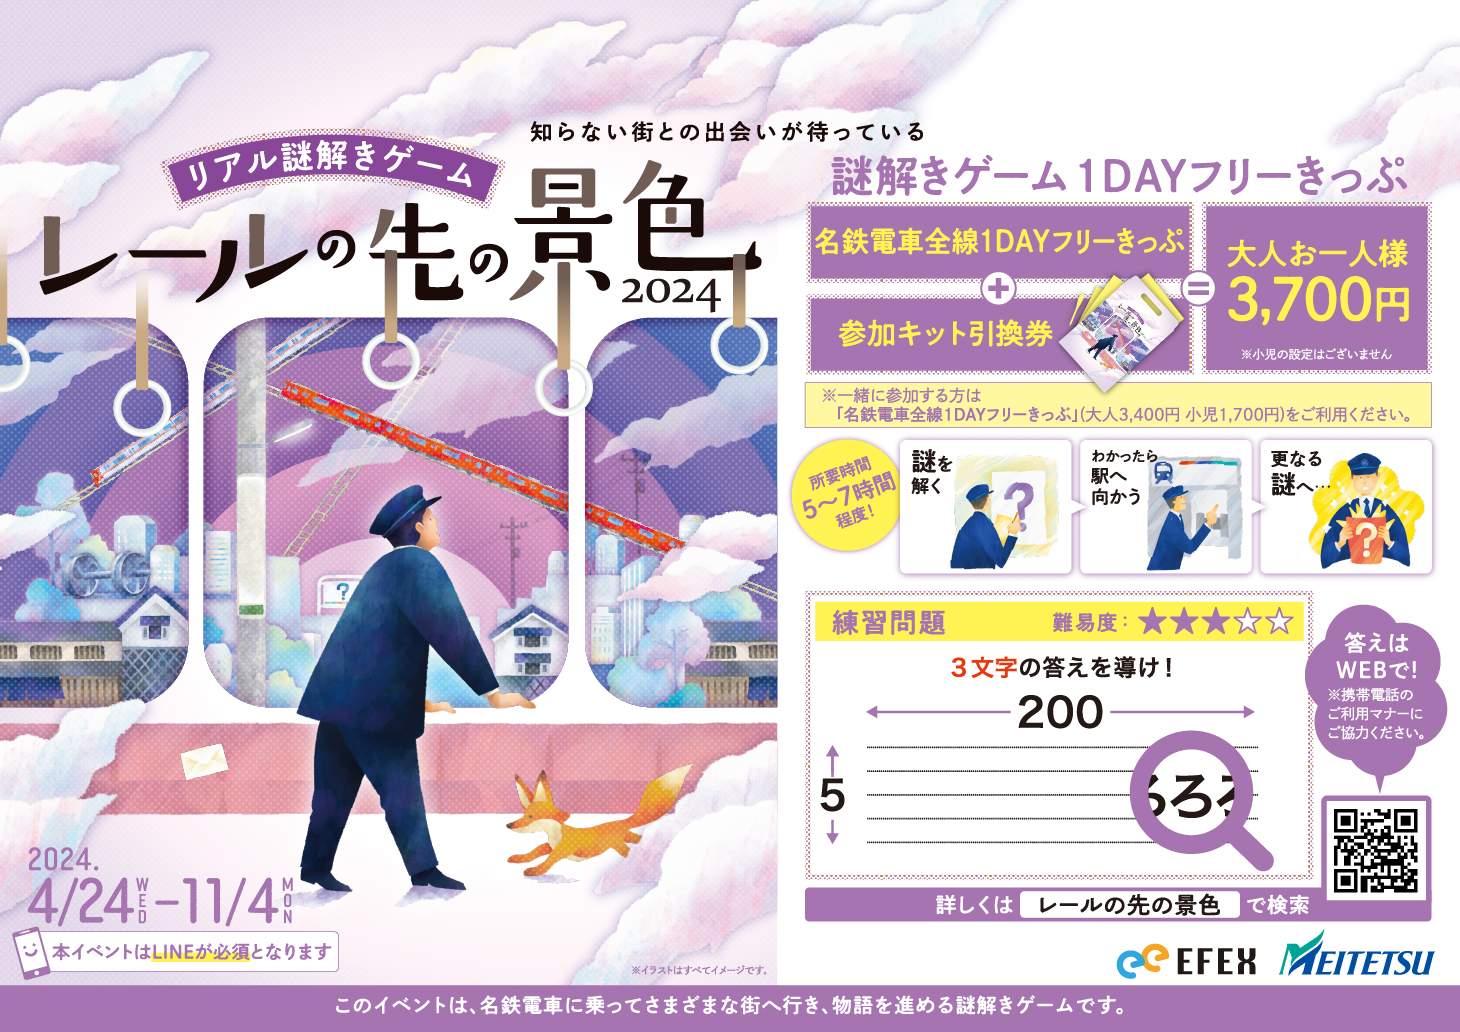 名鉄電車で各地を巡るリアル謎解きゲームが4月24日よりスタート！1DAYフリーきっぷを使った周遊型の謎解きゲーム